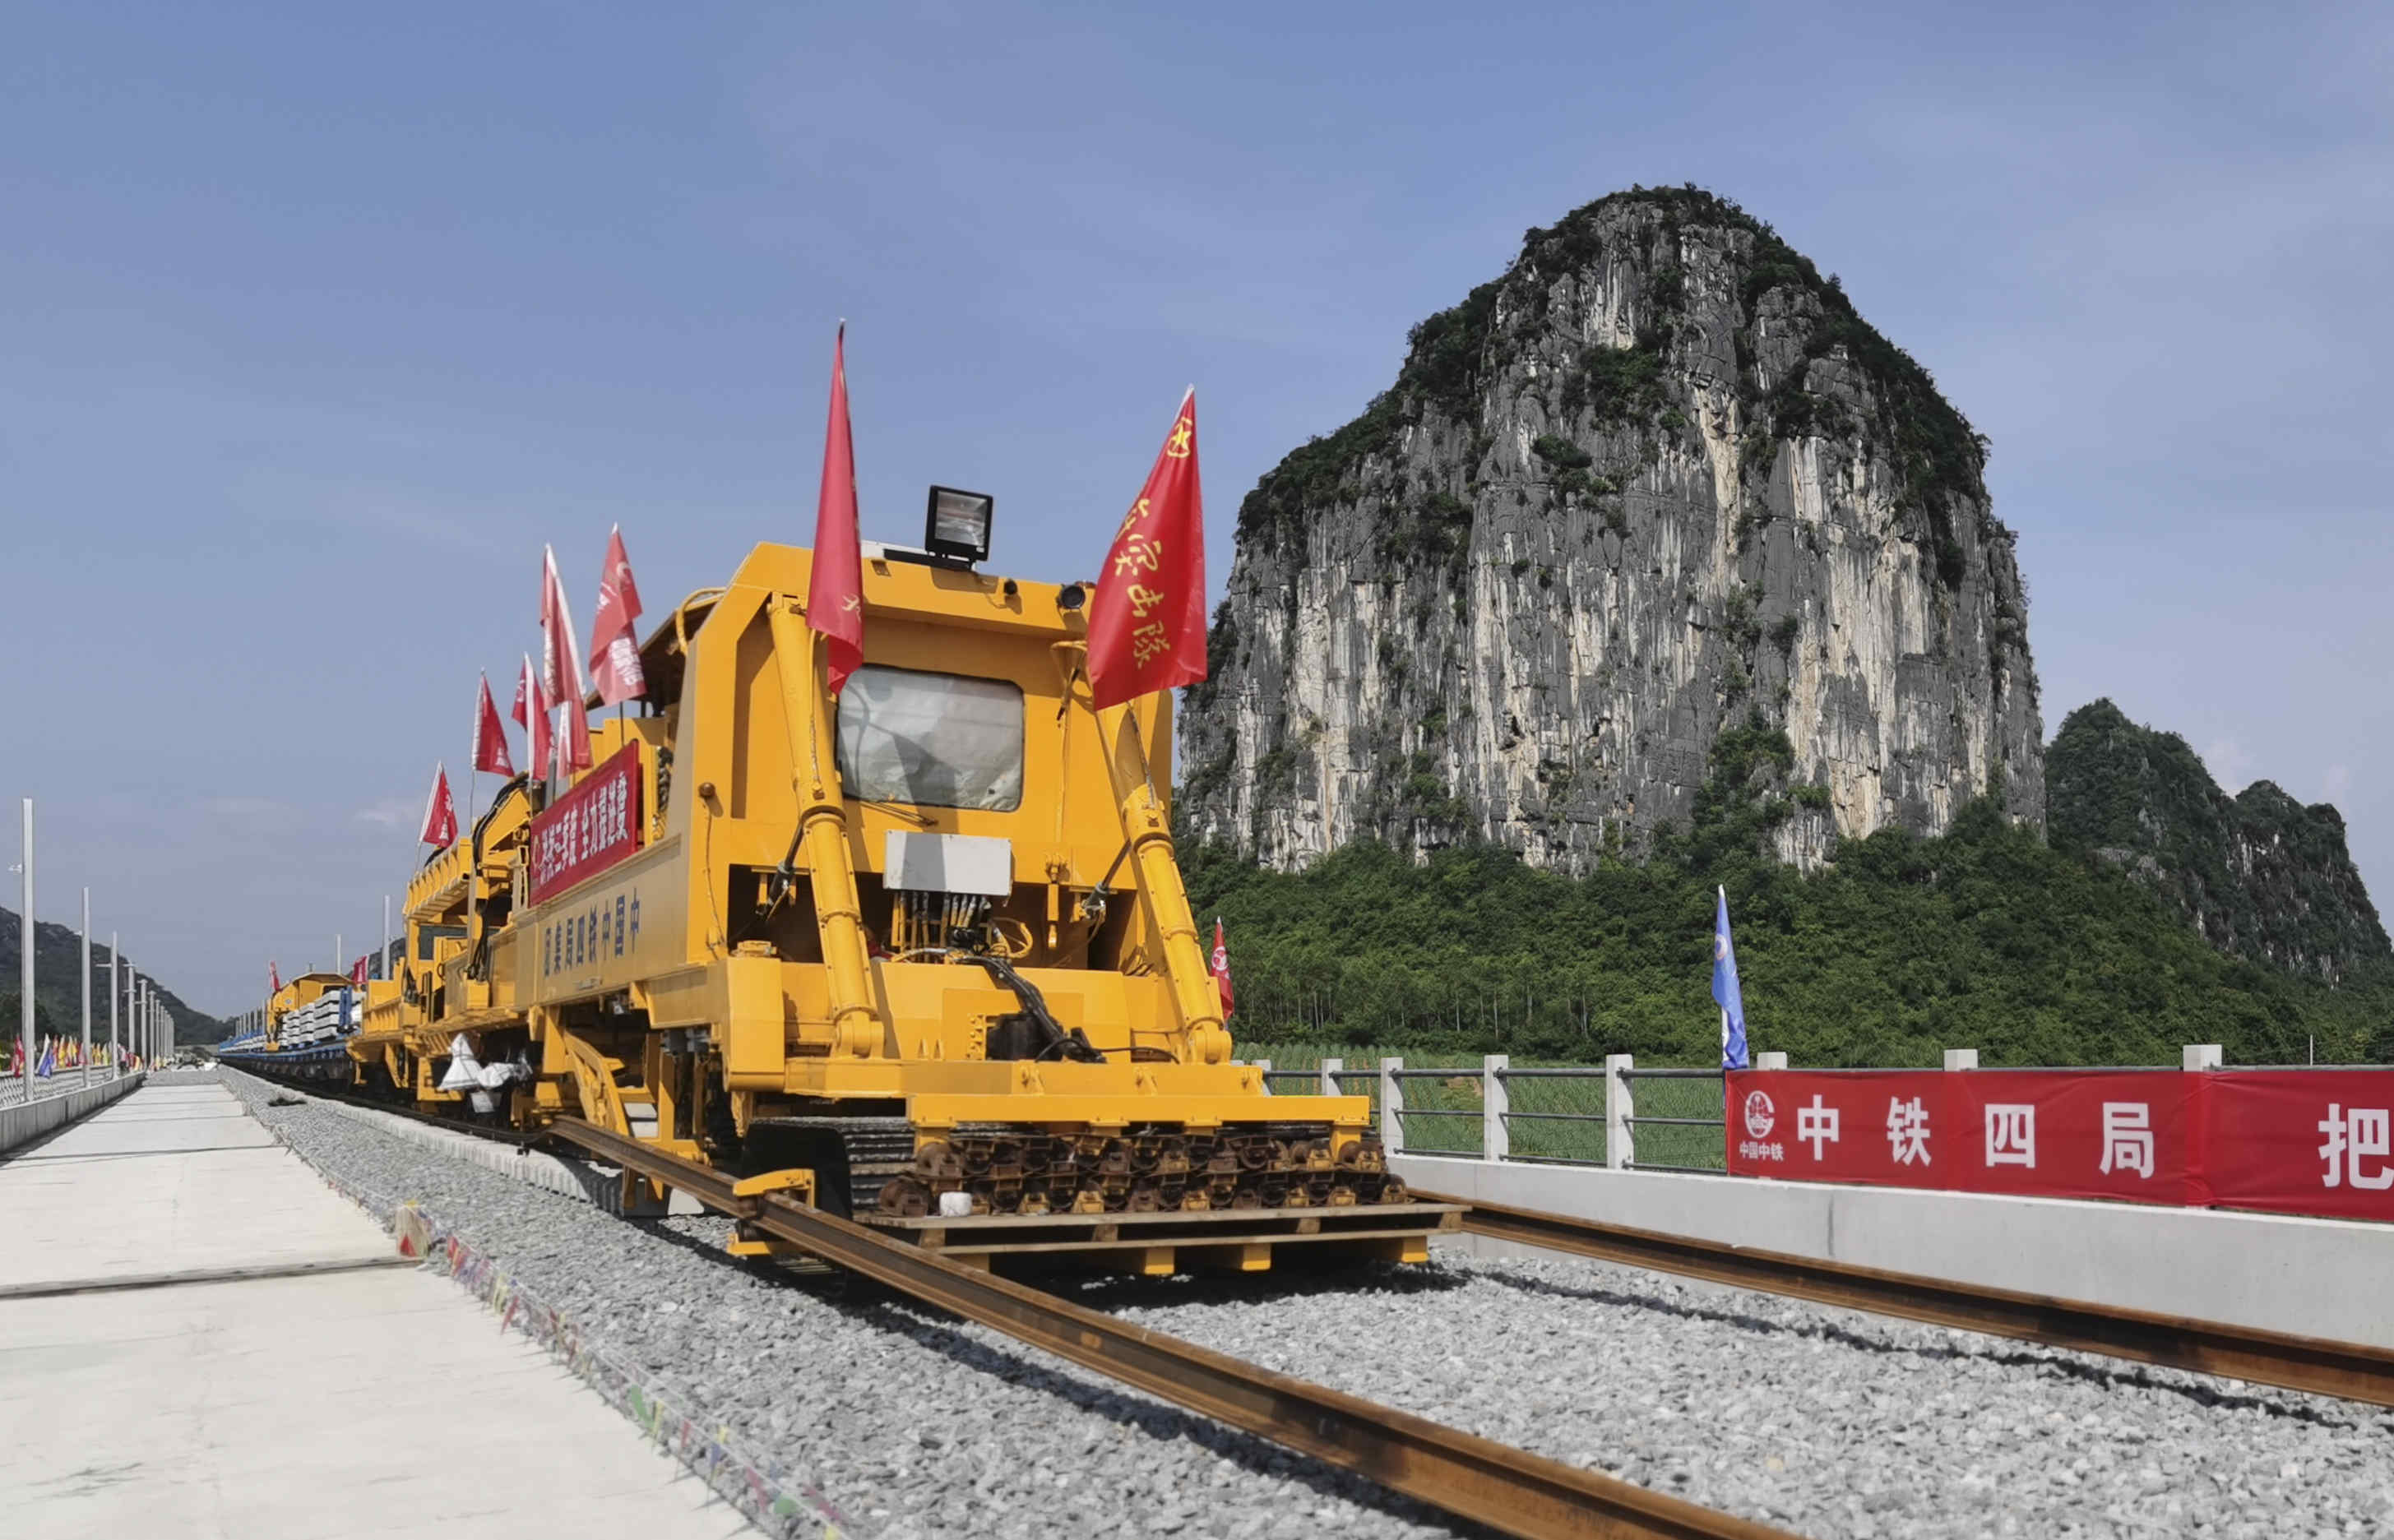  广西南宁至崇左铁路开始铺轨 预计2022年建成通车